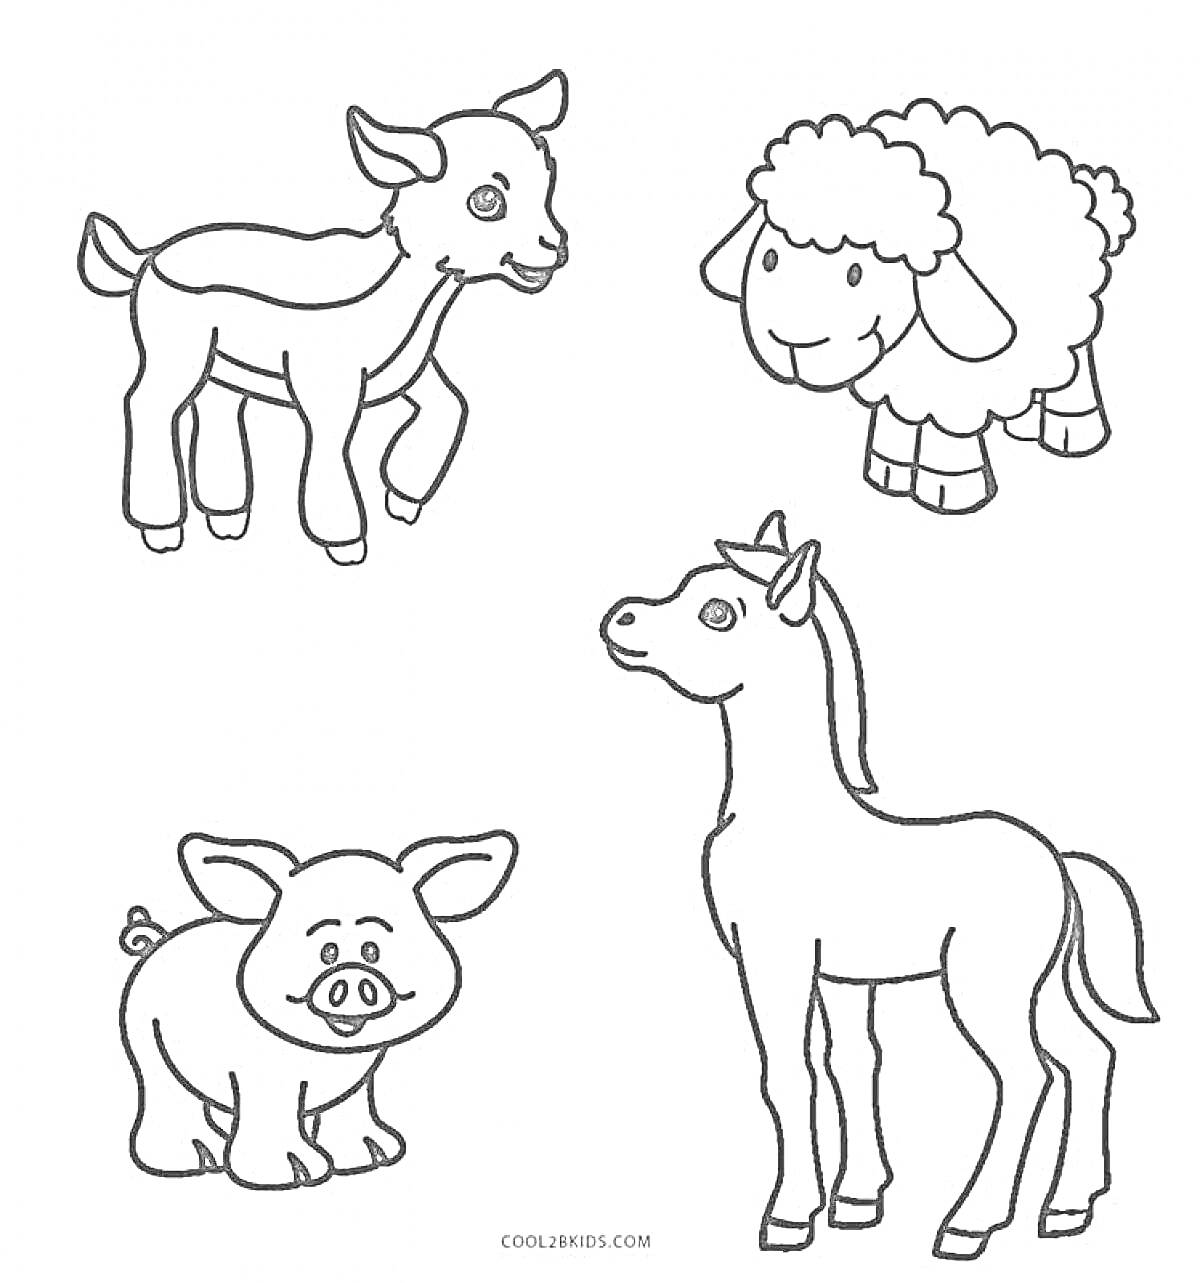 Детская раскраска с изображением козленка, овечки, поросенка и жеребенка